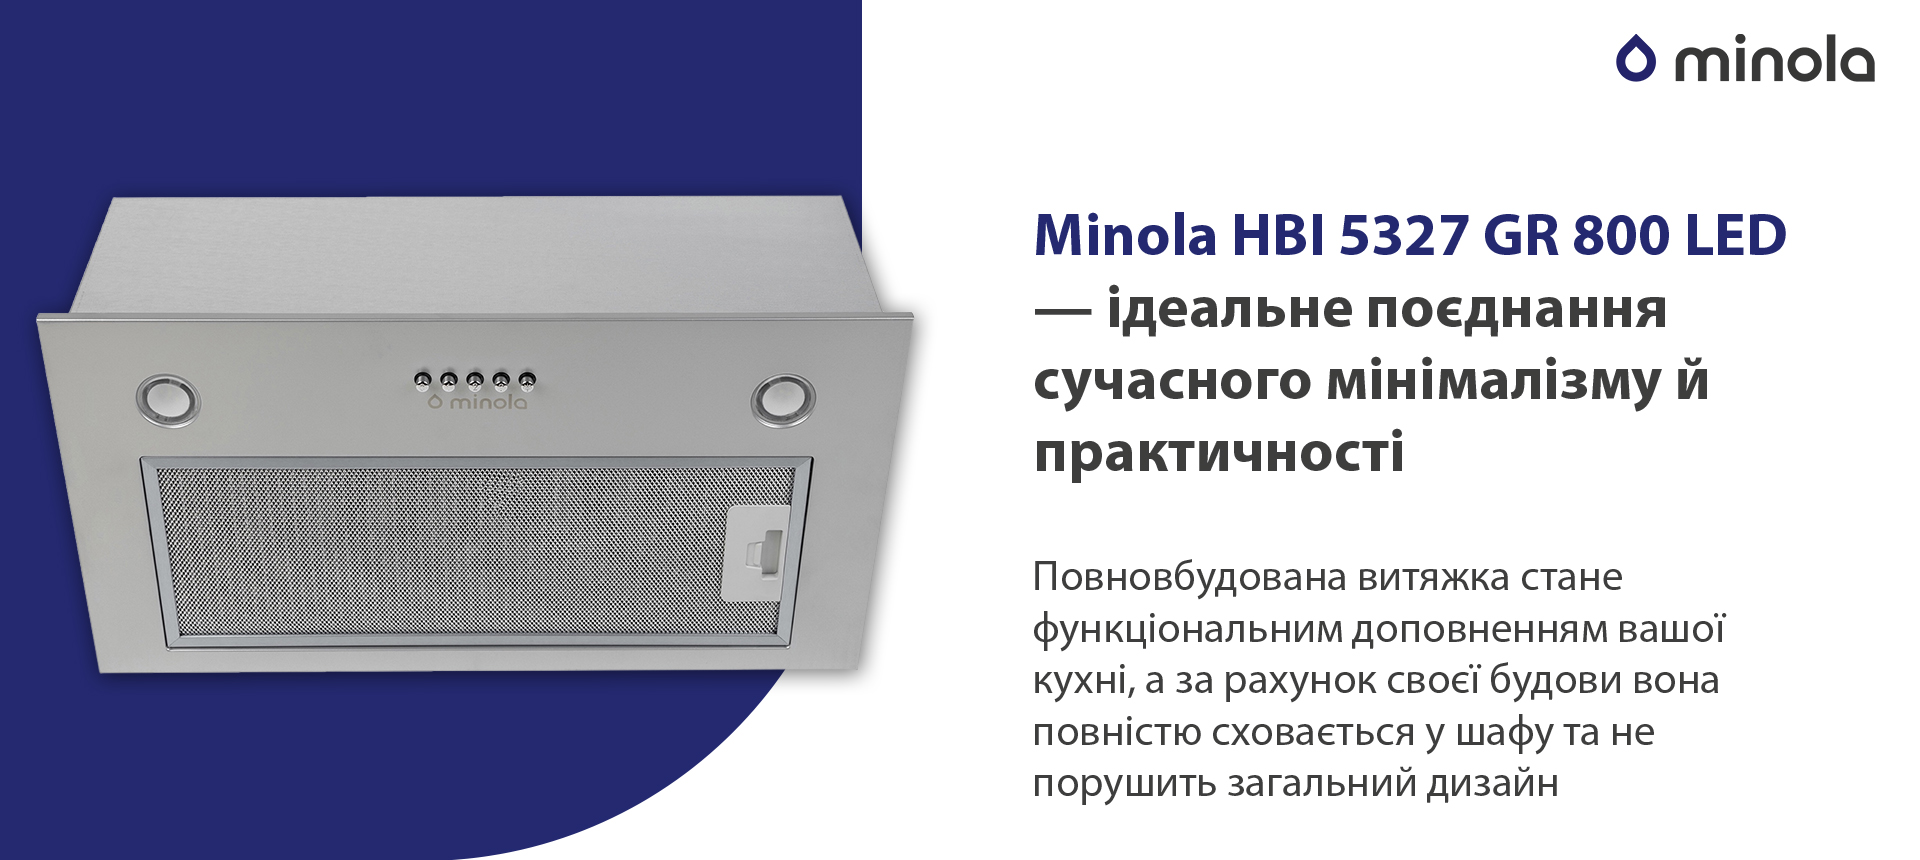 Minola HBI 5327 GR 800 LED в магазине в Киеве - фото 10